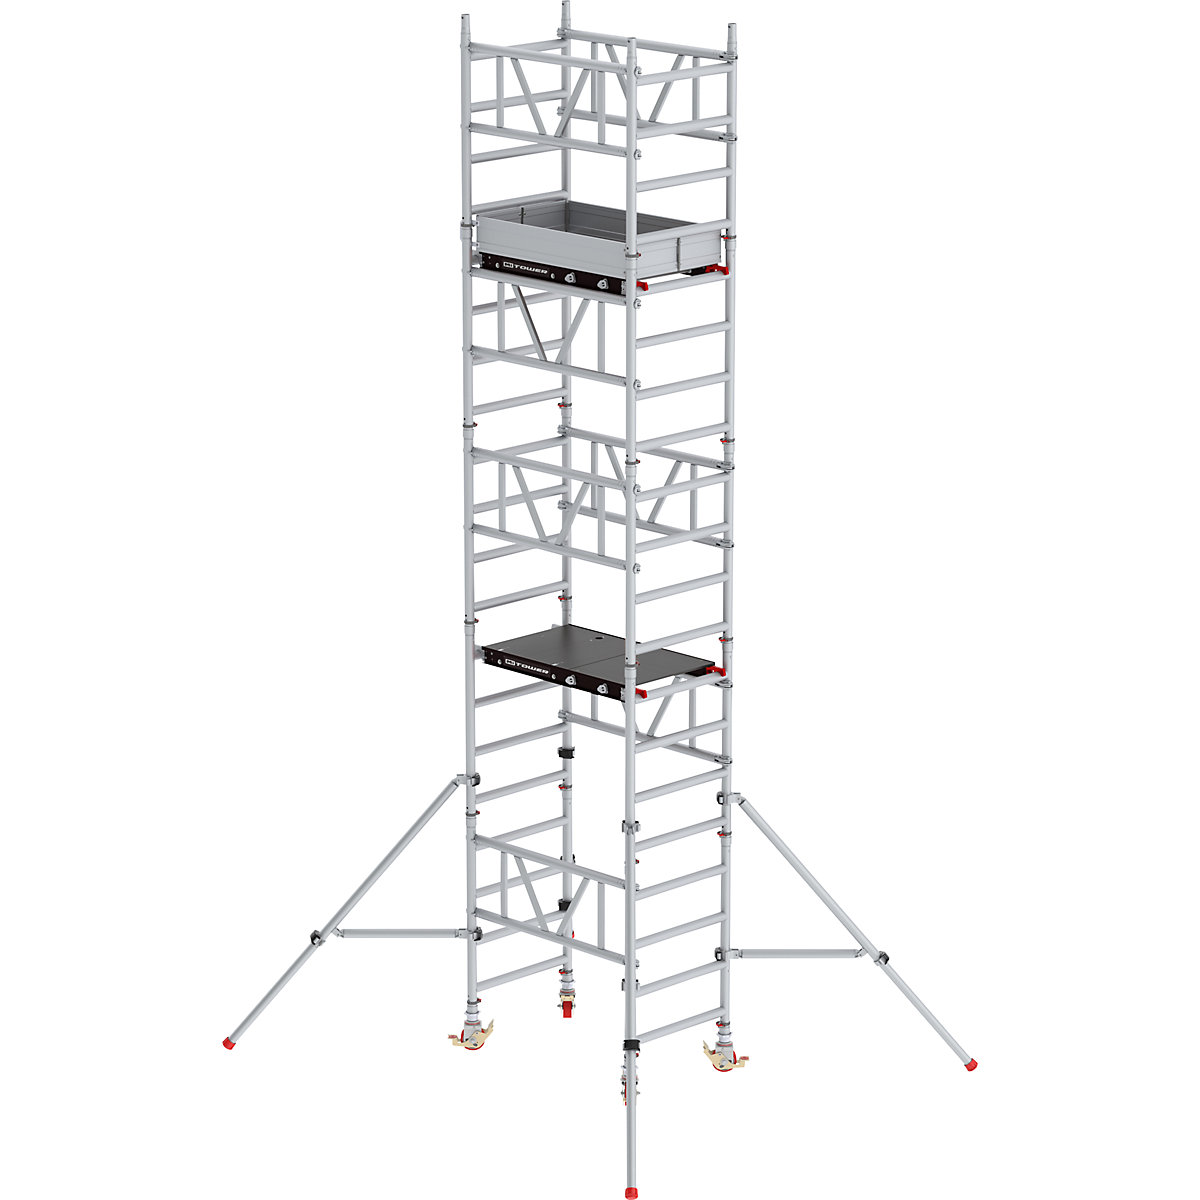 Pomična skela za brzo sastavljanje MiTOWER Standard – Altrex, platforma Fiber-Deck®, DxŠ 1200 x 750 mm, radna visina 6 m-23